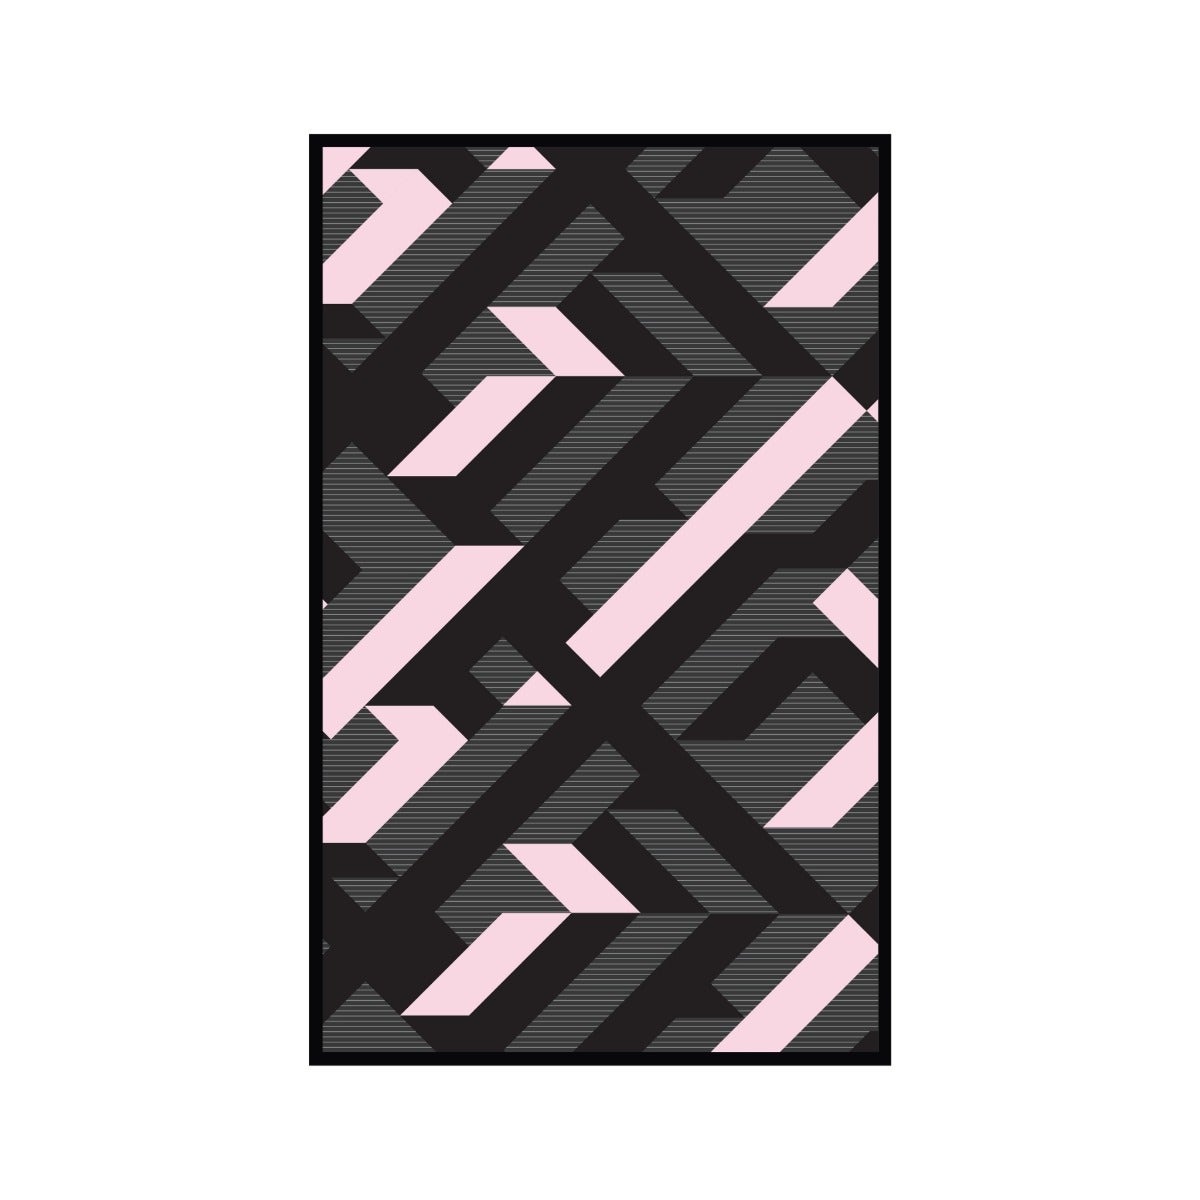 เสื่อ PDM BRAND AVALON (Black-White-Pink) Size M-01